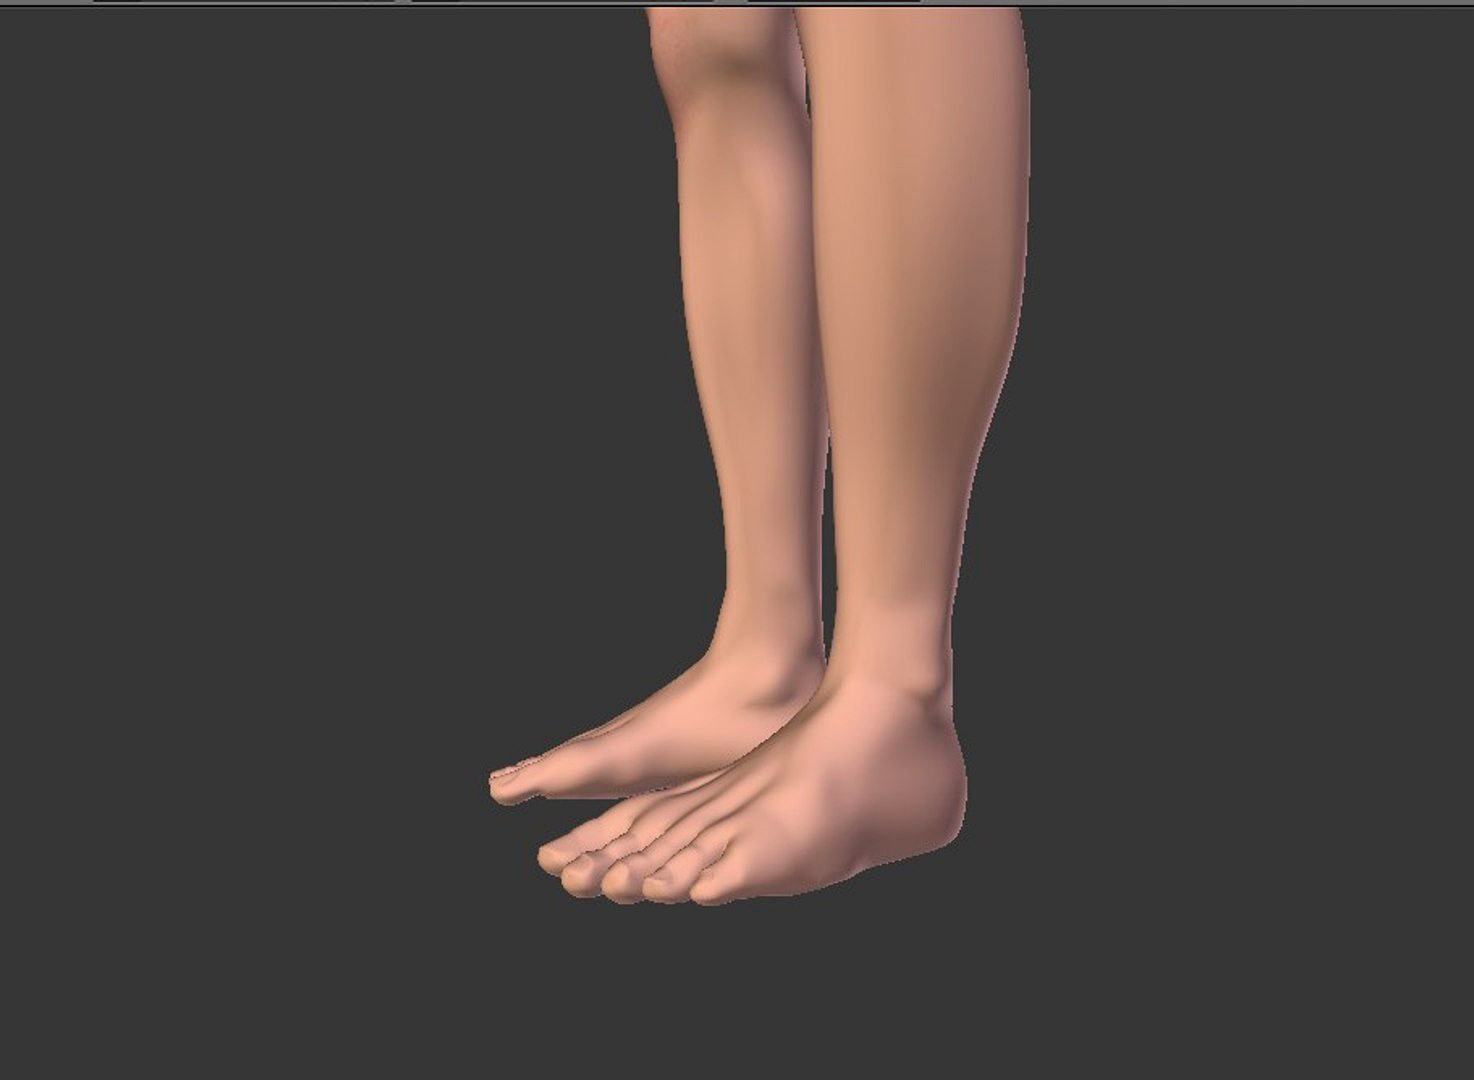 Male legs